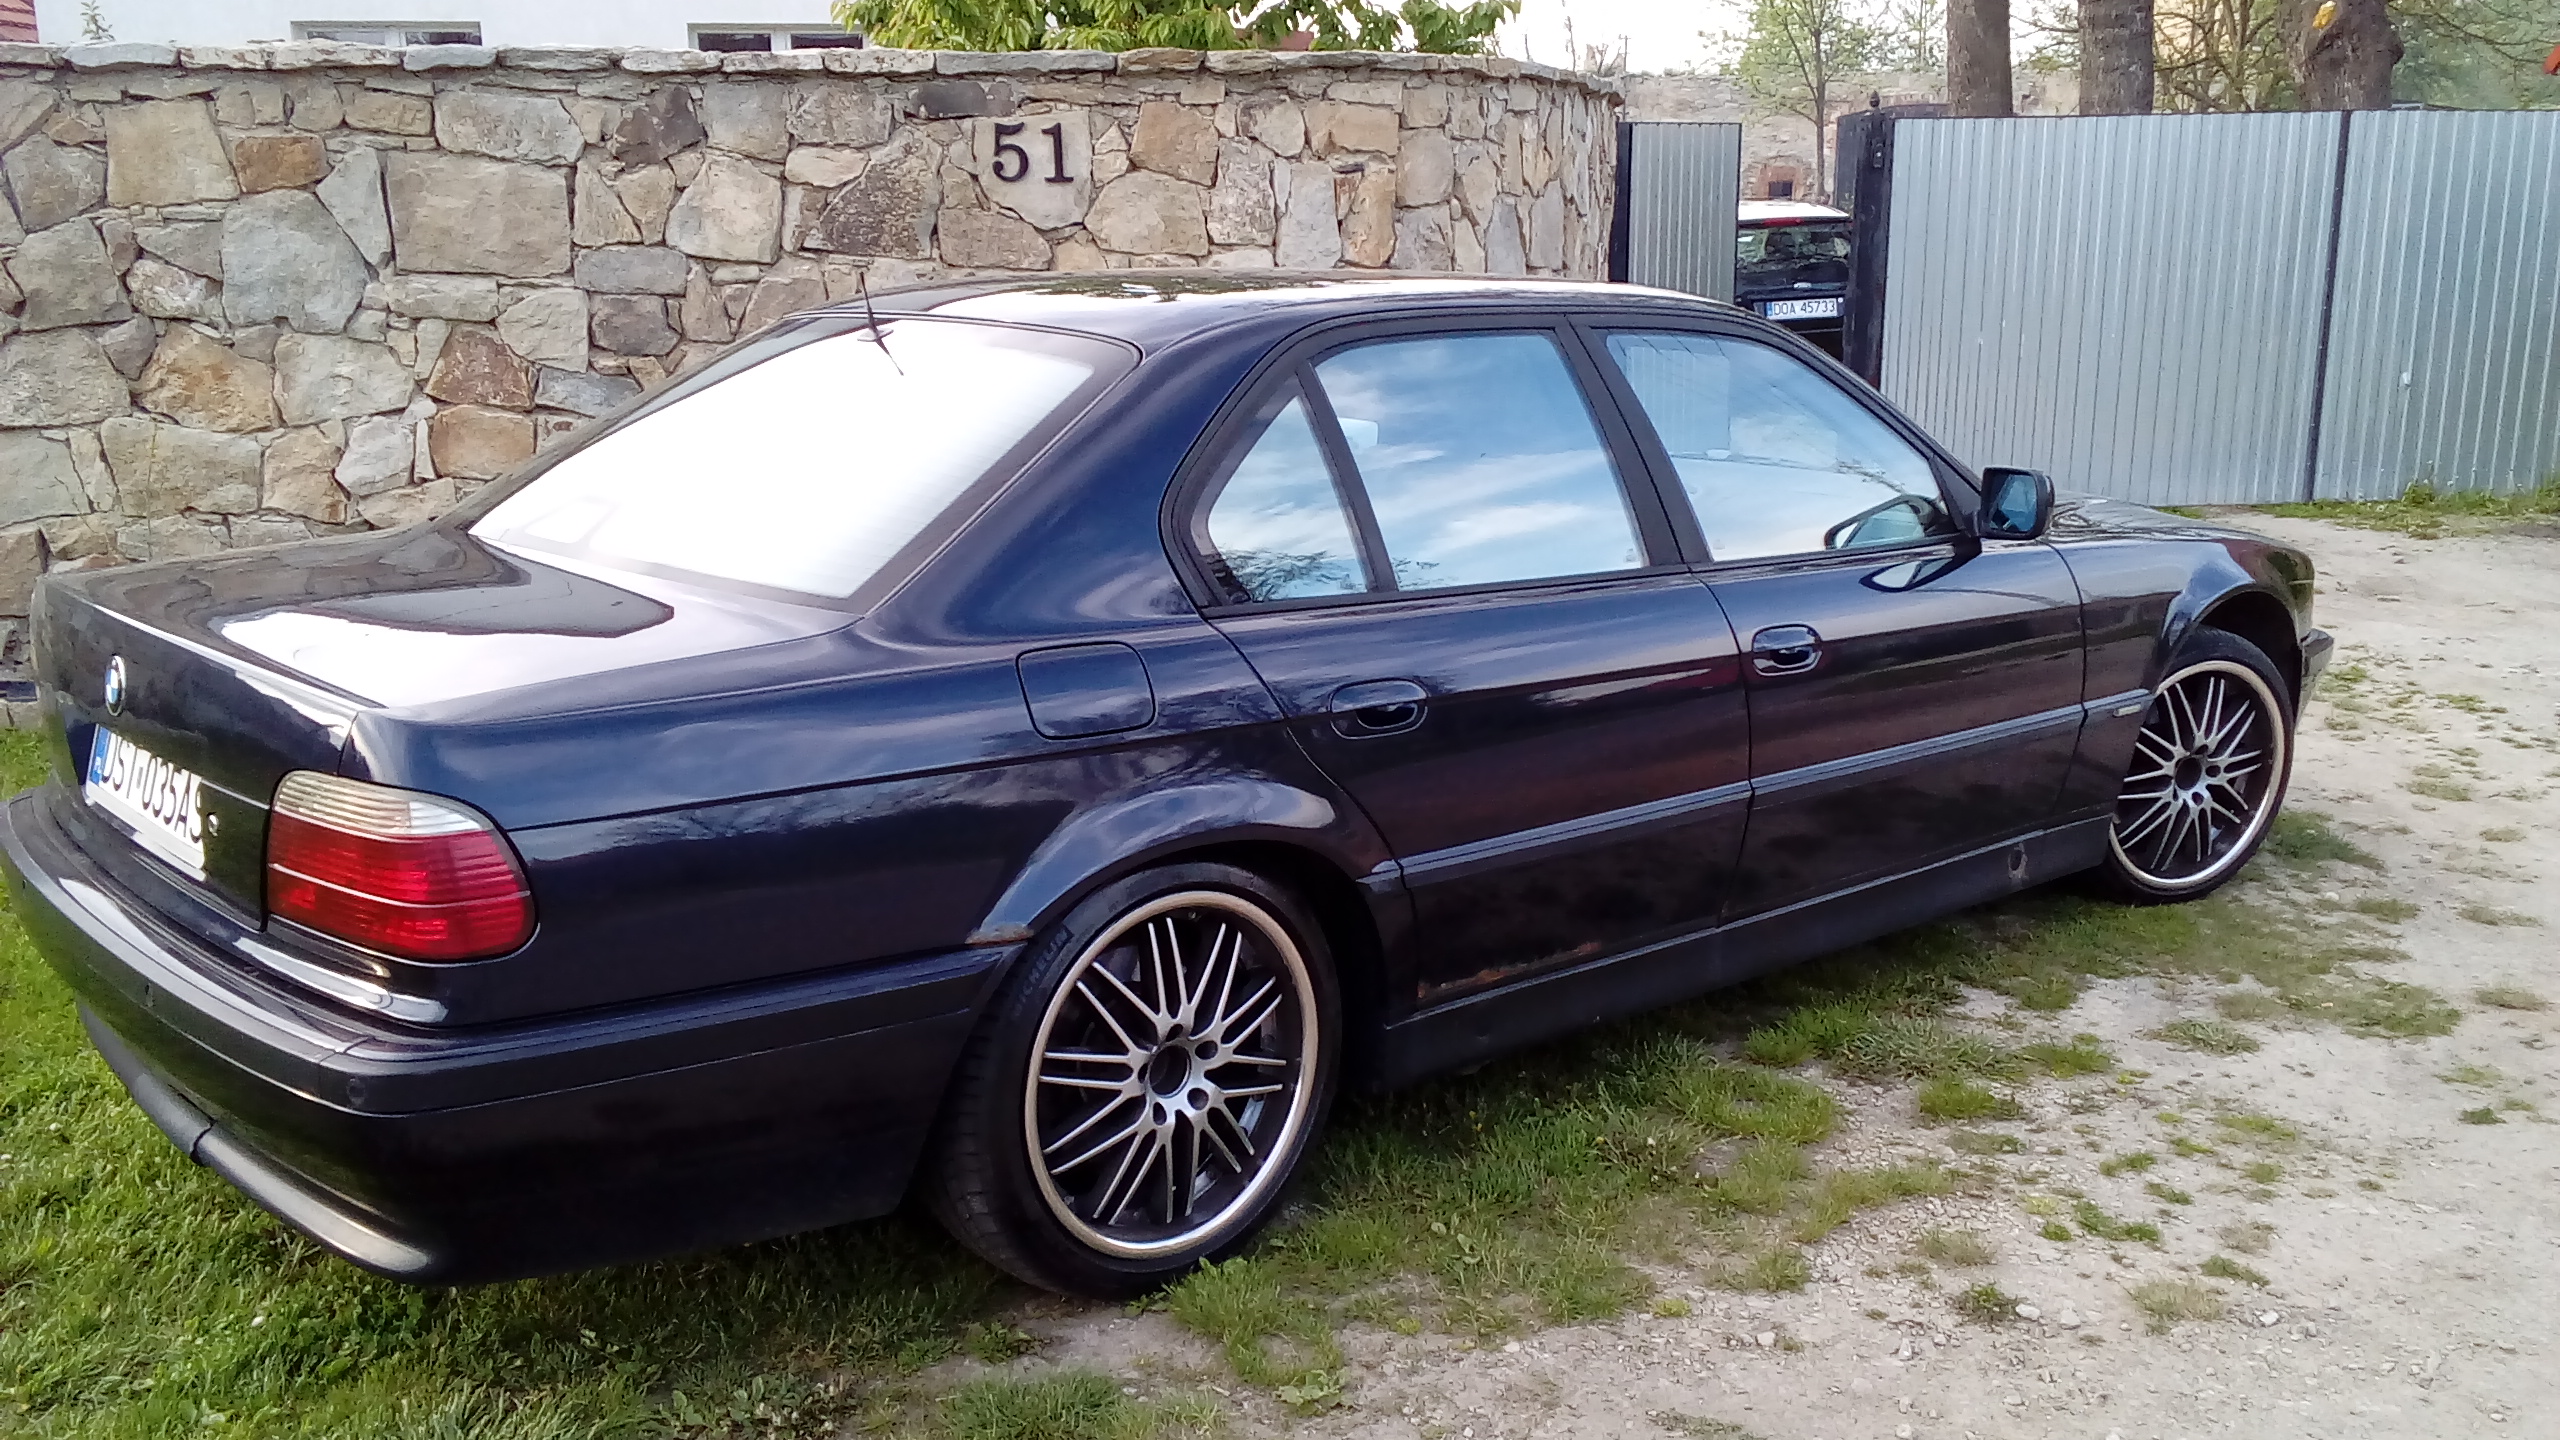 [S] Felgi BMW 19" OZ BREYTON E39 E38 E46 E90 E60 + opony